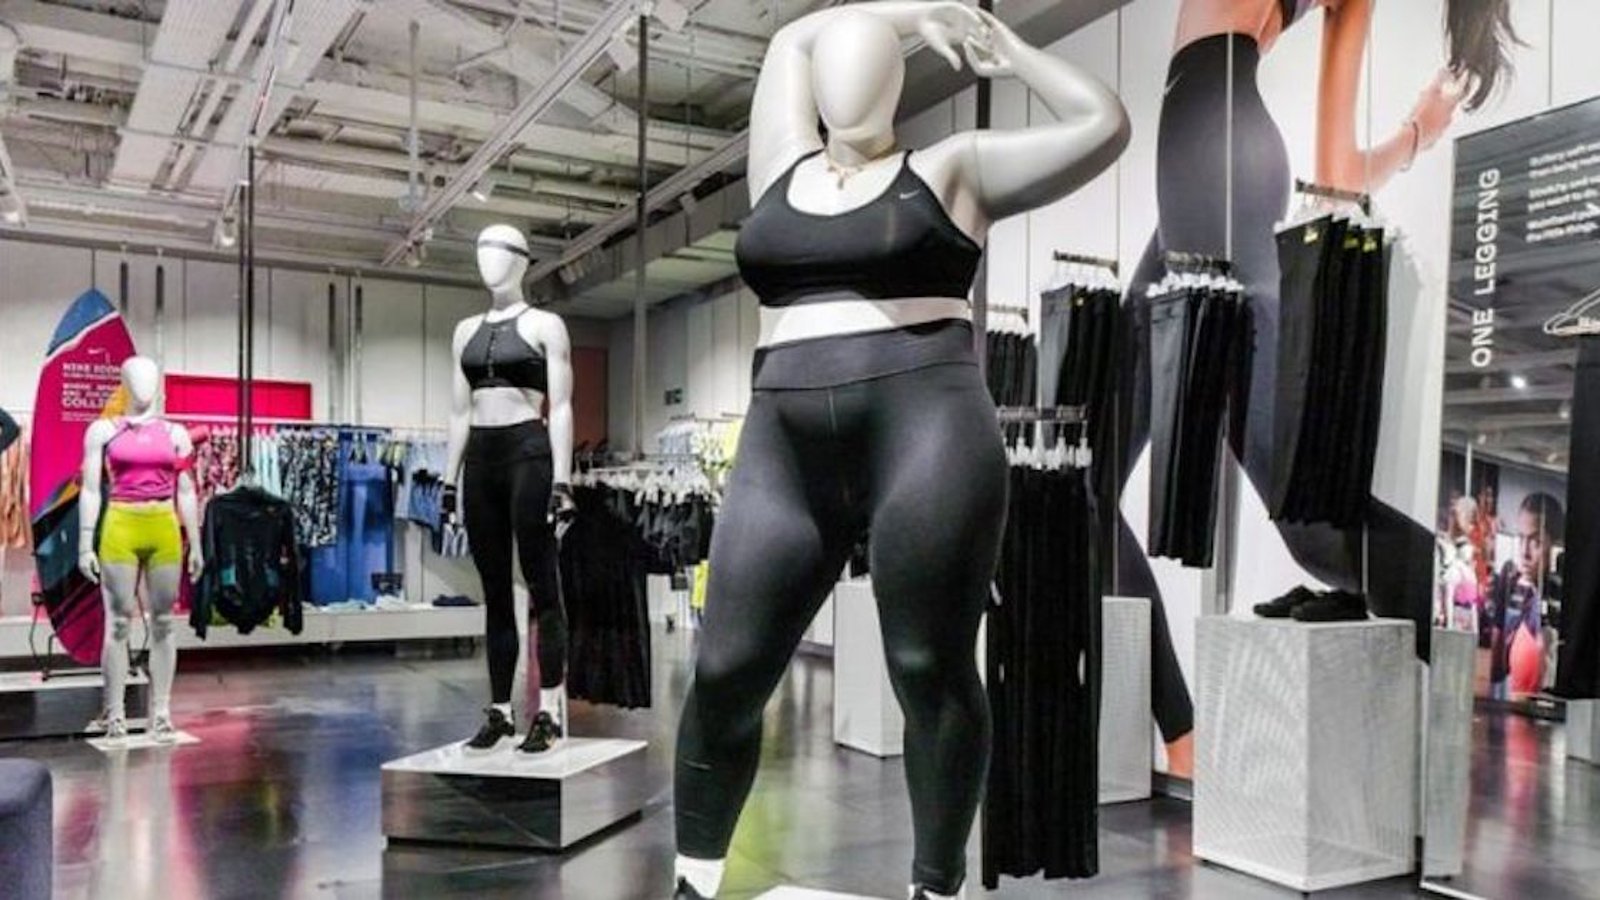 Nike affiche des mannequins taille + en boutique